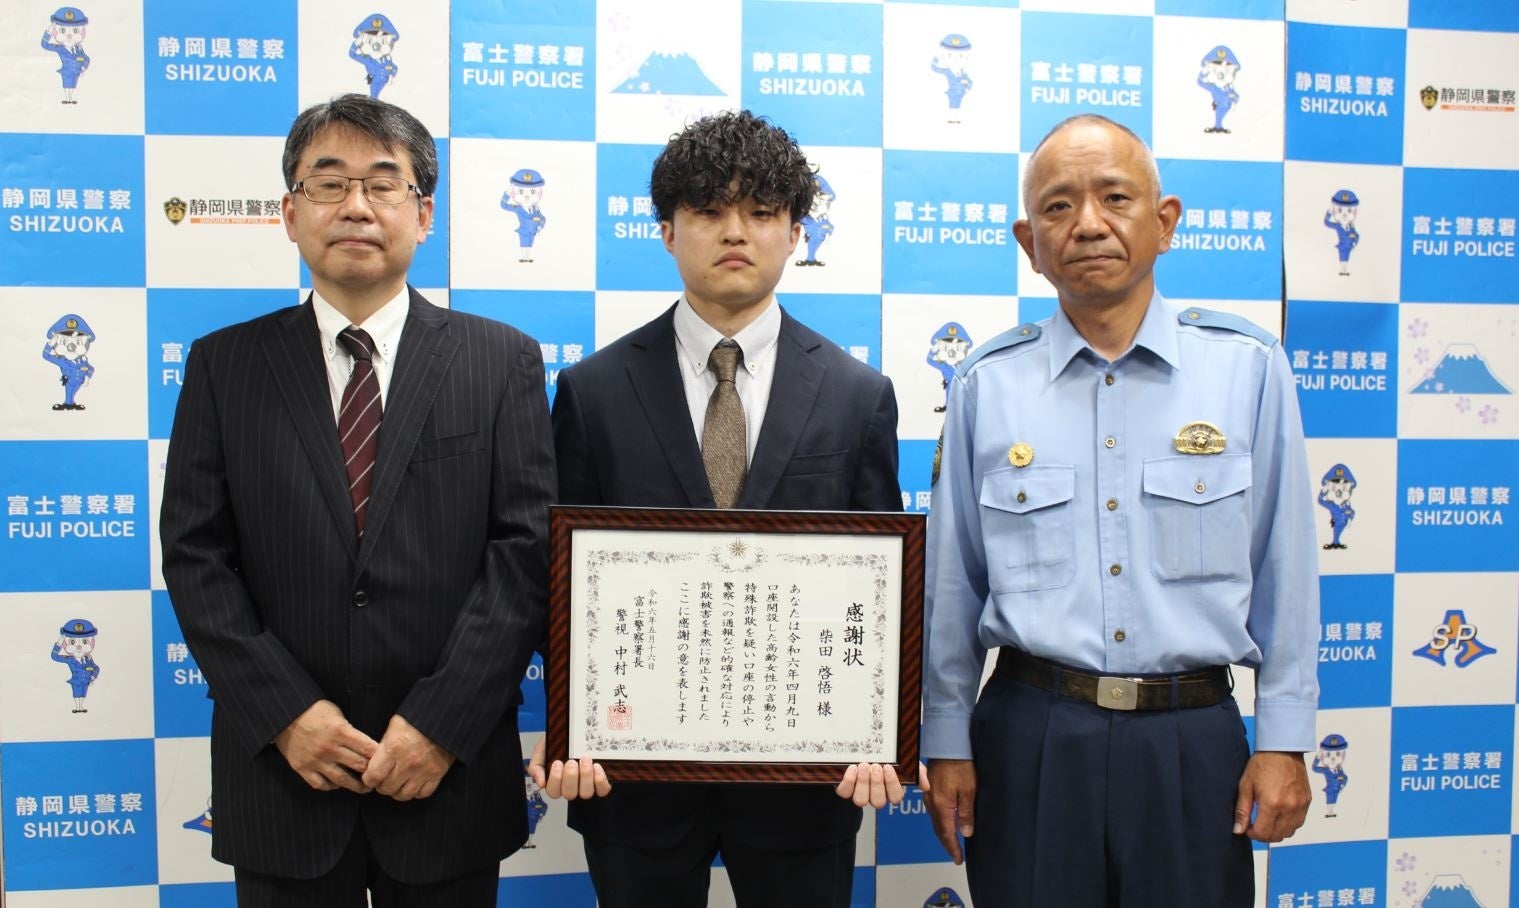 ～お客さま対応で詐欺被害を未然に防止～auじぶん銀行社員が静岡県富士警察署から感謝状を贈呈されました